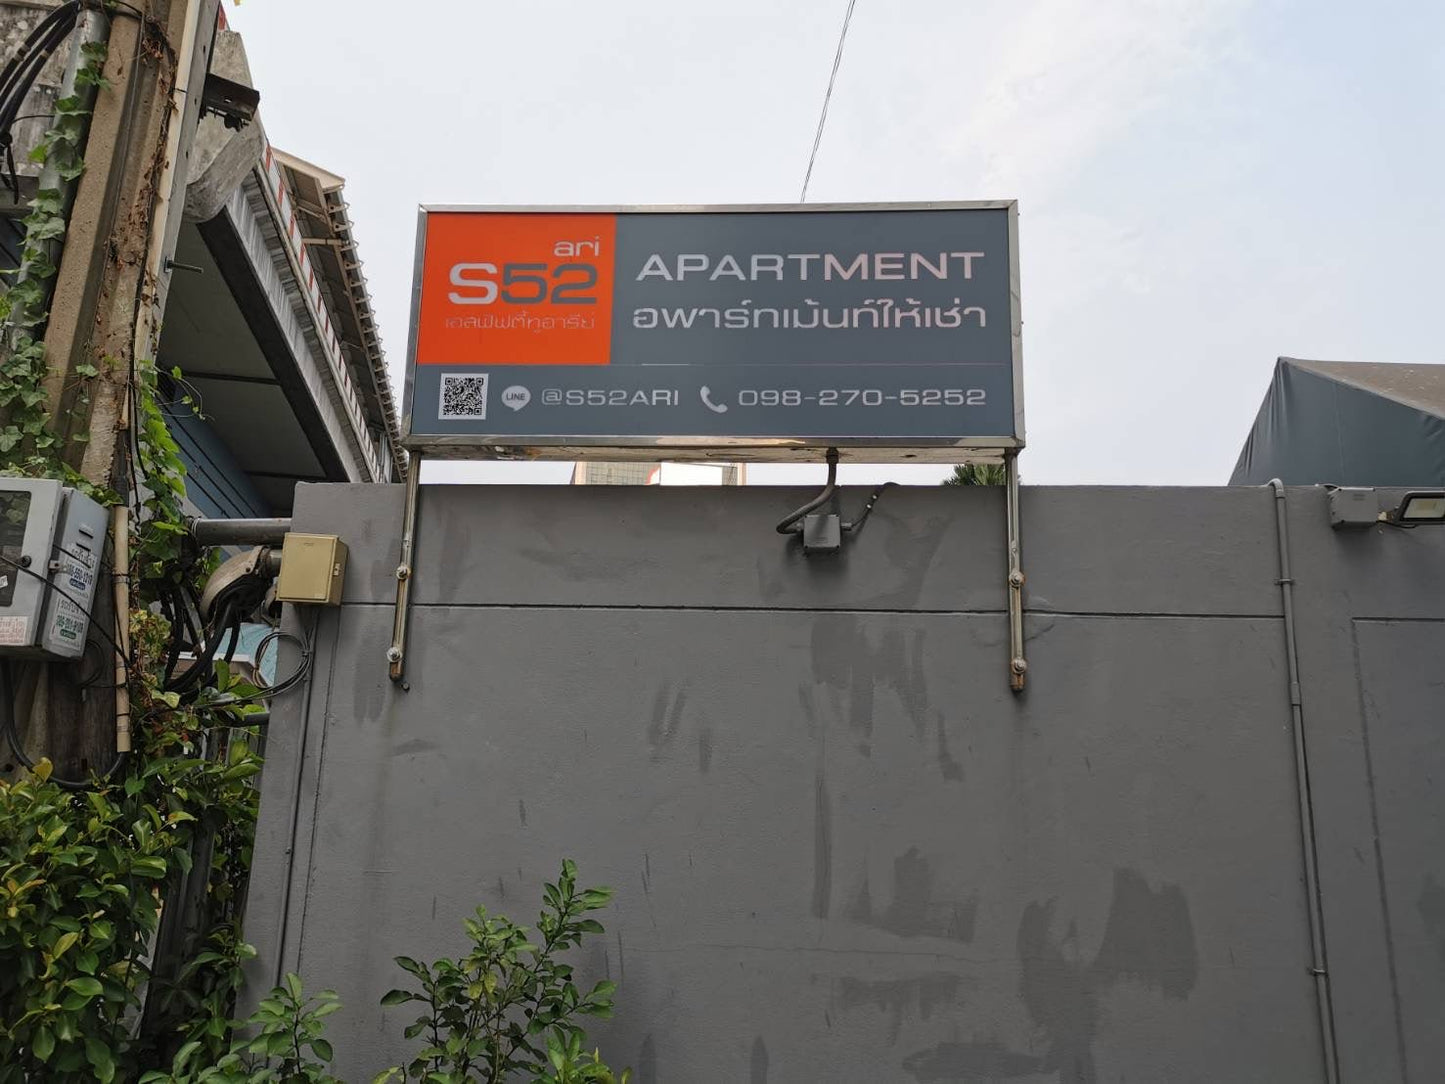 apartment sign